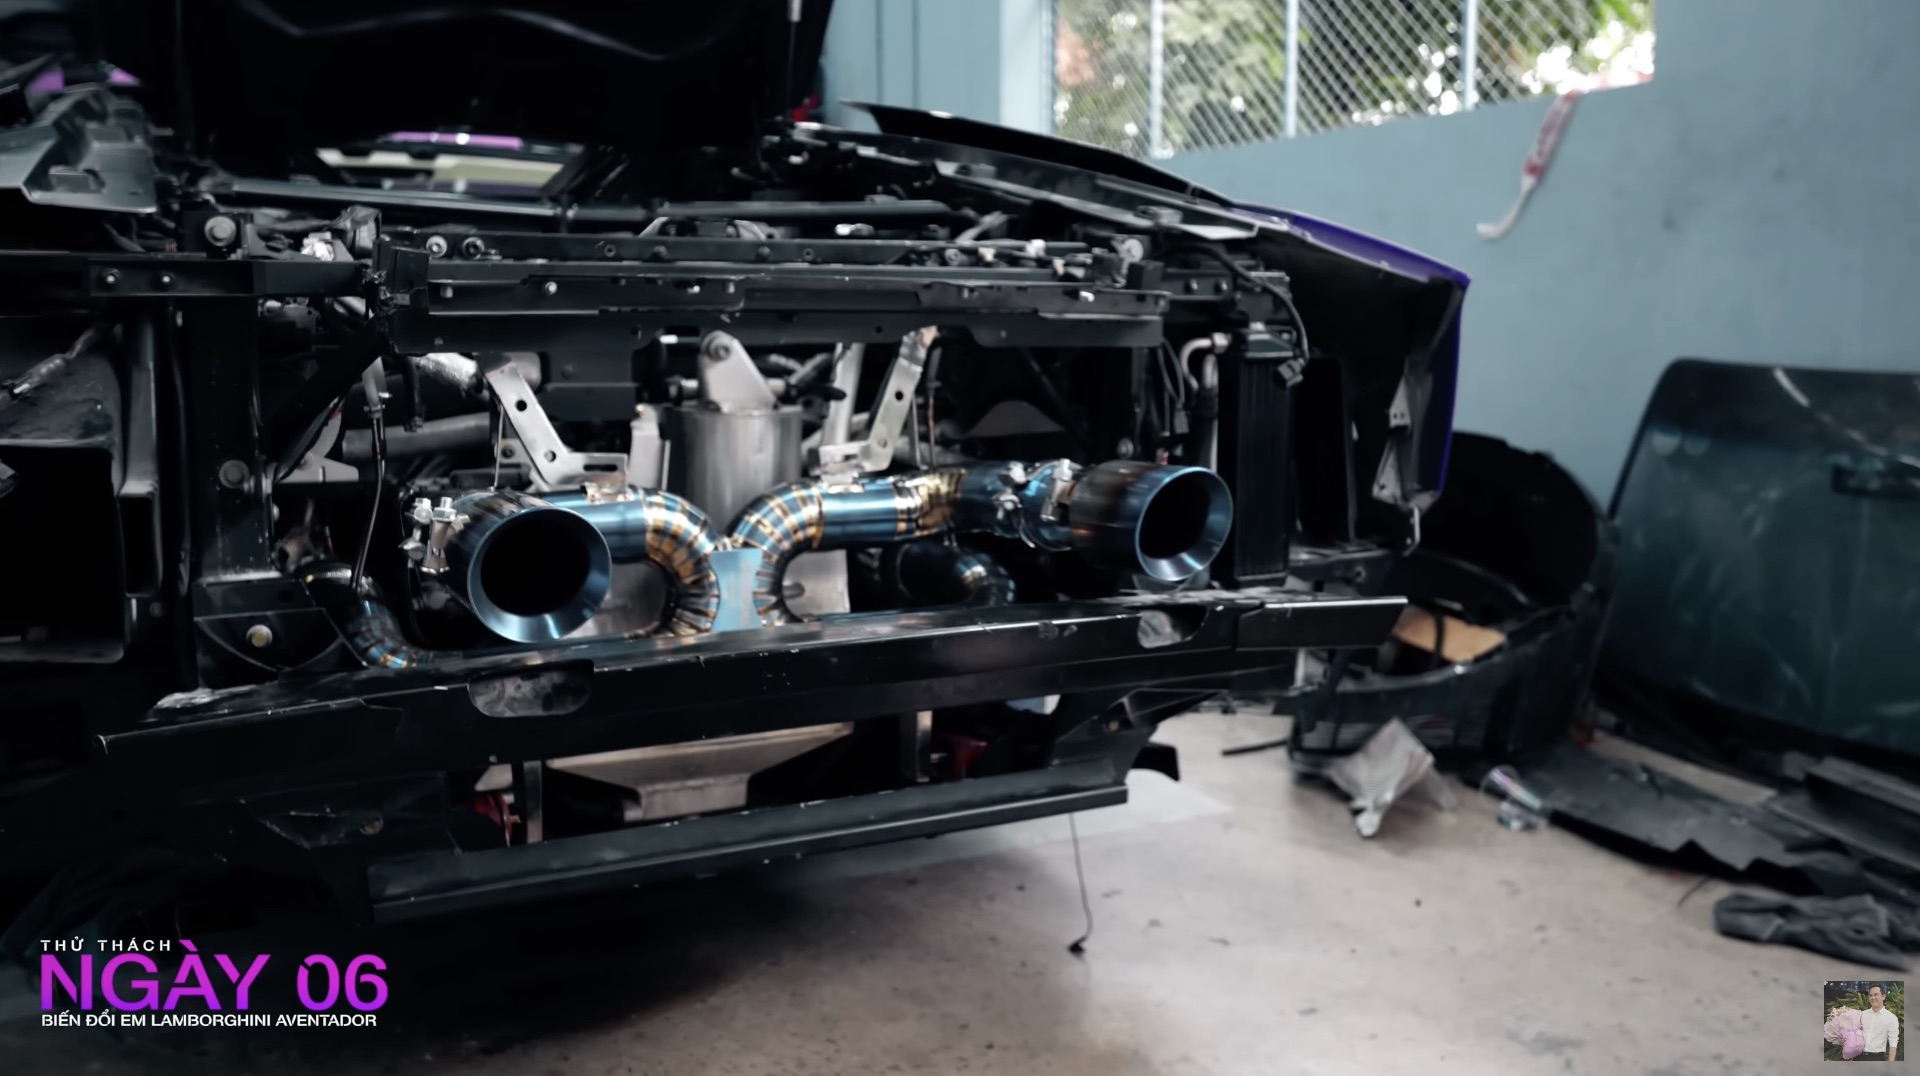 Chủ xe Lamborghini Aventador đưa yêu cầu độ khó, chủ xưởng tại TP. HCM nhăn mặt nhưng kết quả mỹ mãn - Ảnh 6.